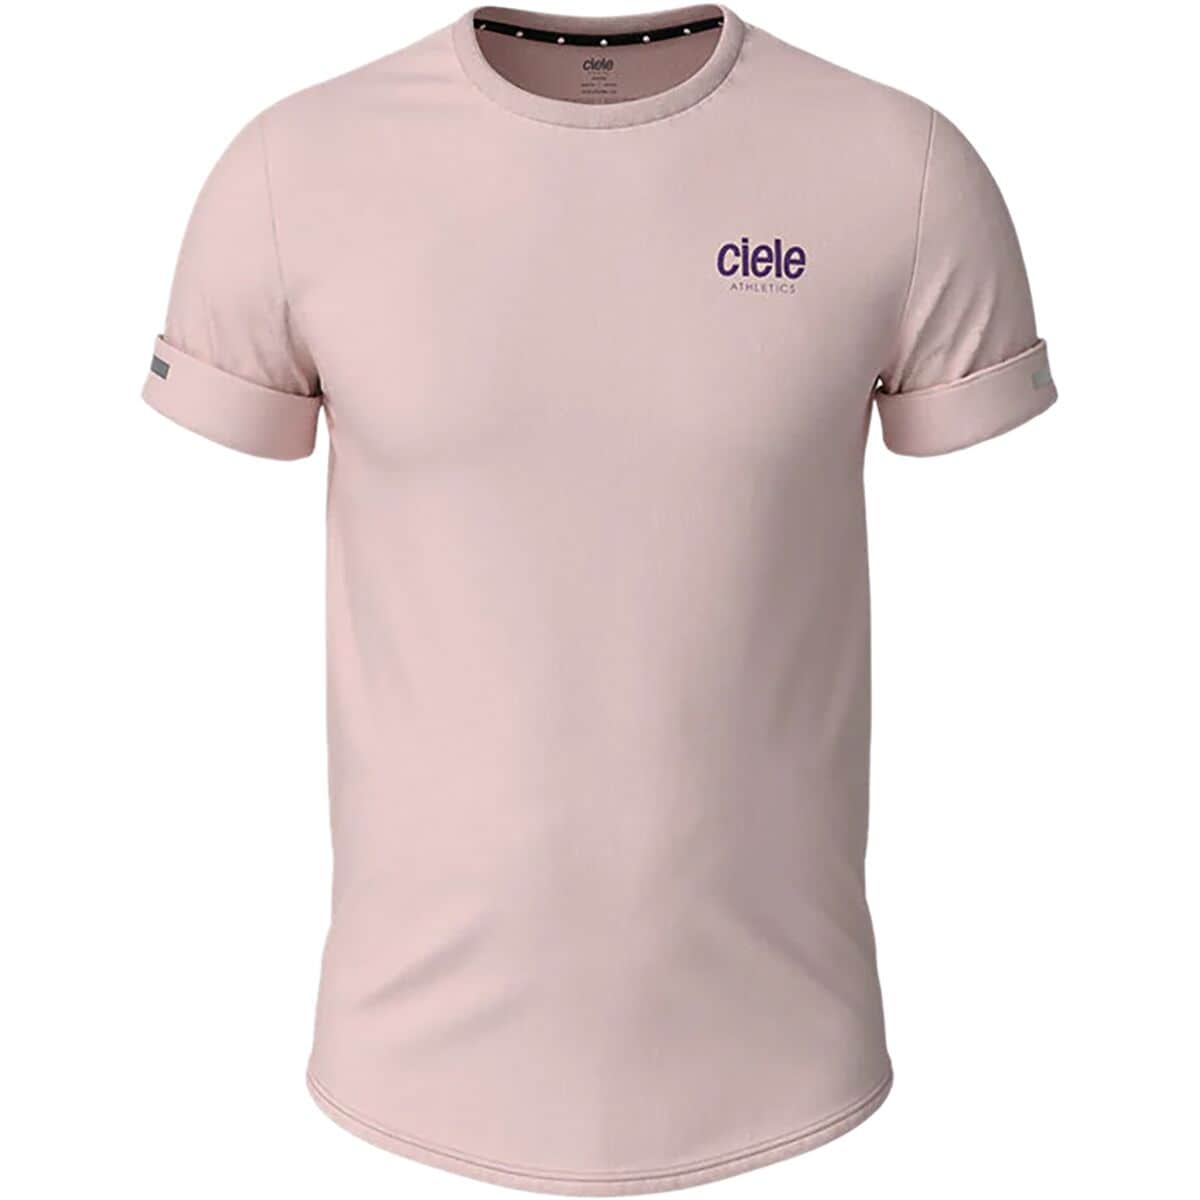 Ciele Athletics Athletics Loopy NSB T-Shirt - Men's